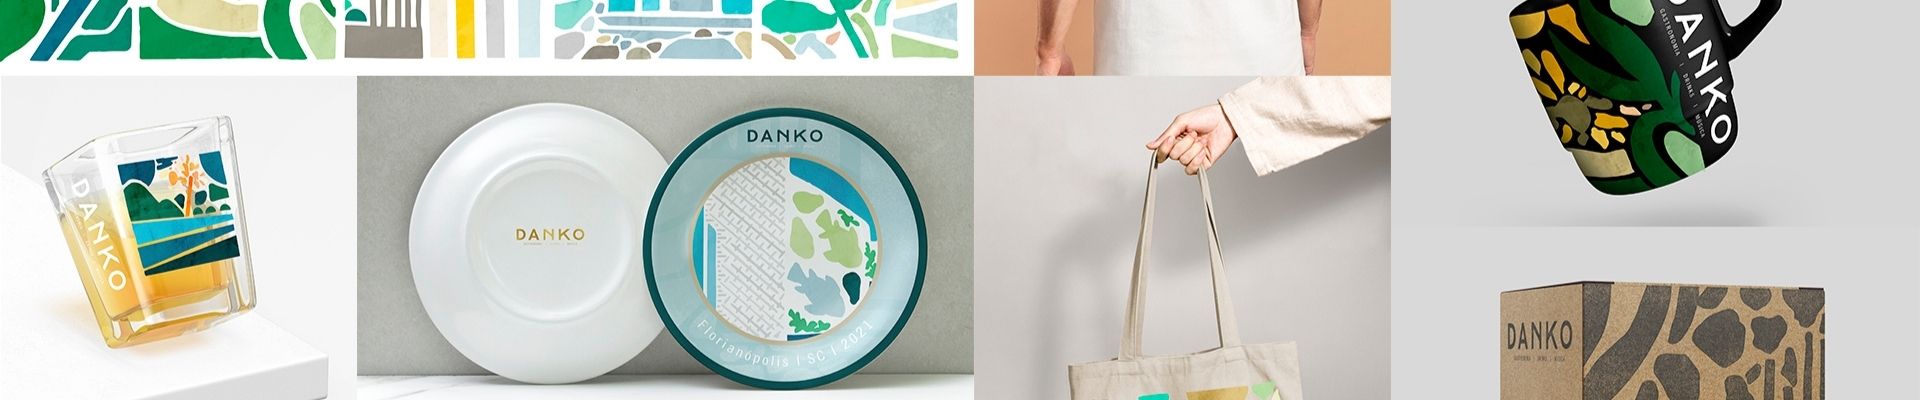 Restaurante Danko aposta em identidade visual com referências à cultura de Florianópolis